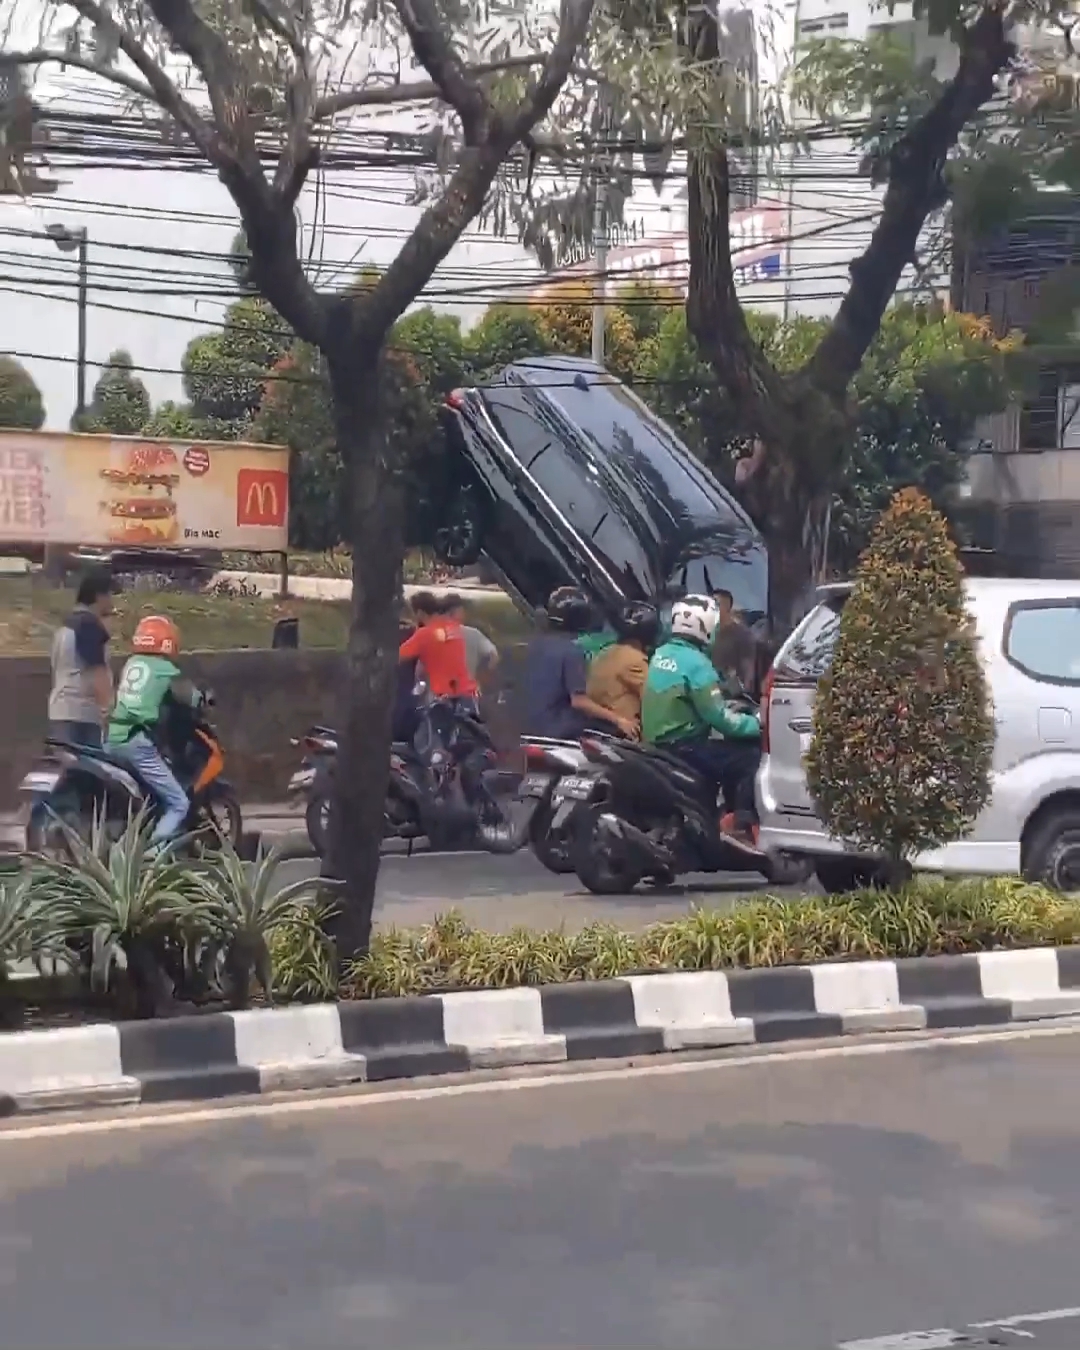 Salah Injak Pedal, Mobil Hantam Pohon saat Pesan Drive Thru di Restoran Cepat Saji di Tangsel